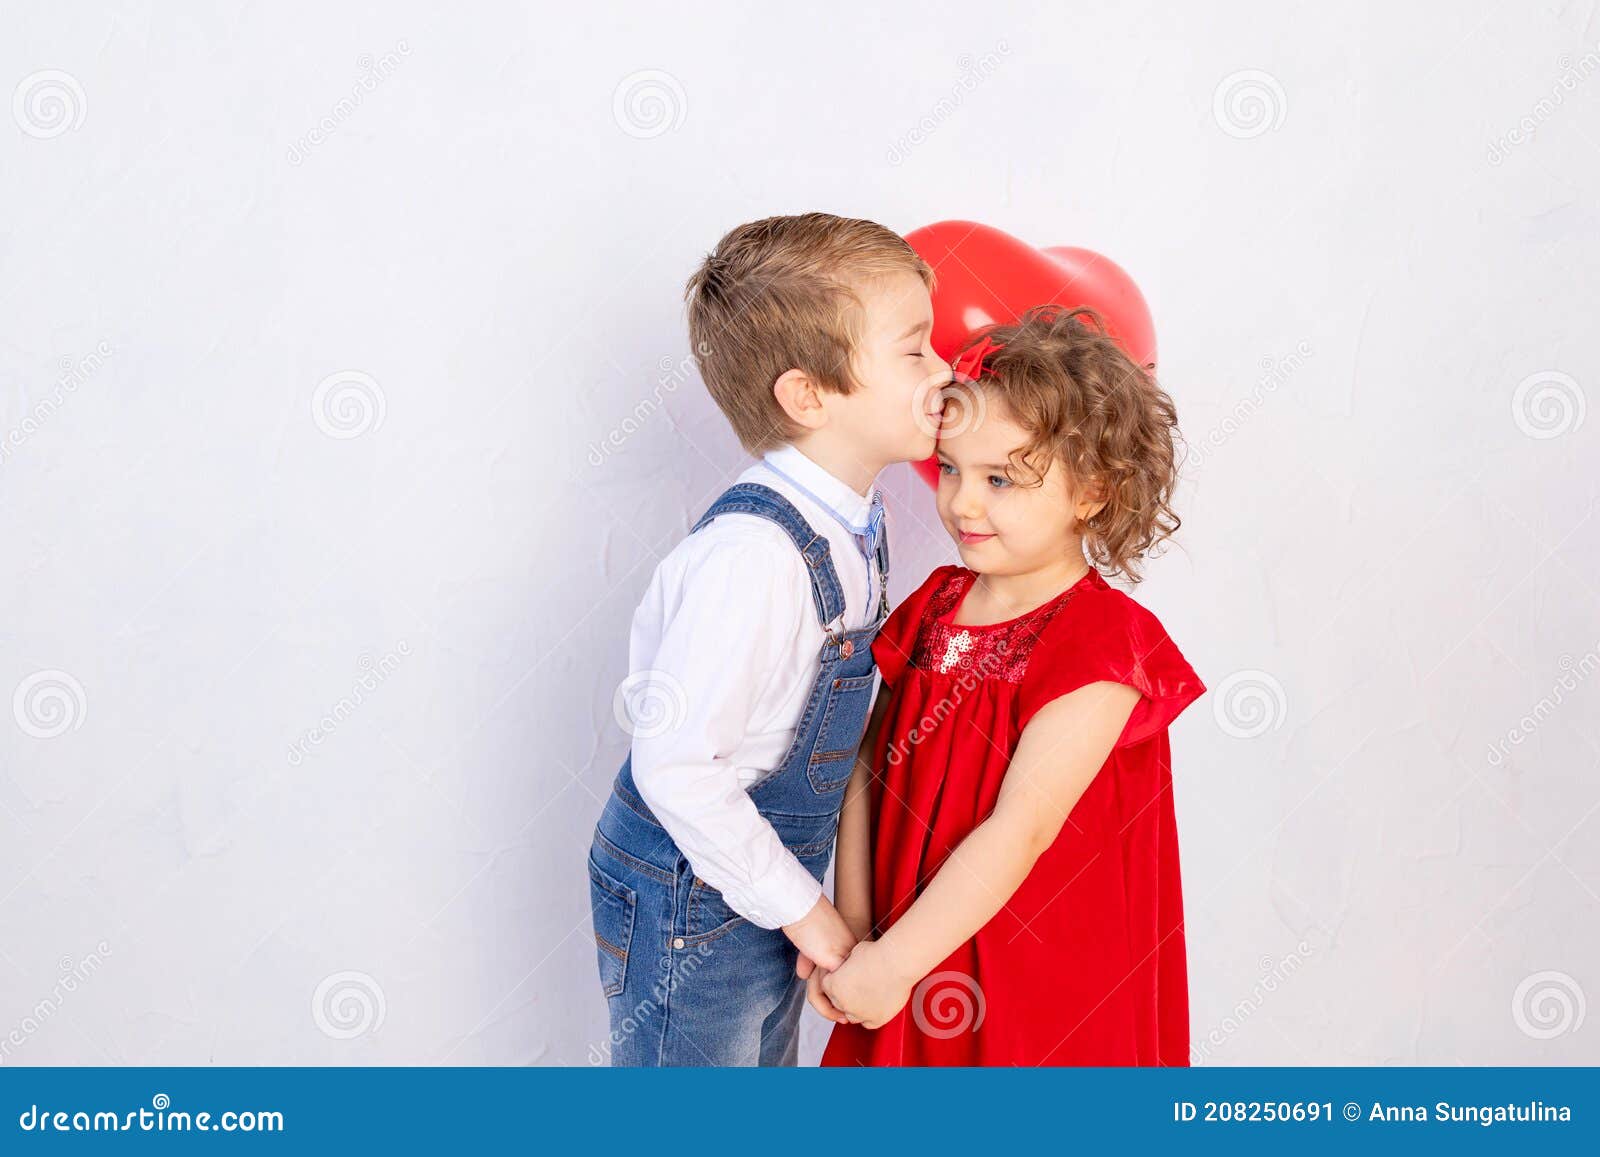 熊妹妹亲吻着哥哥的脸颊，在屋外温暖的拥抱着。他看起来很开心，微笑着。女孩对他的朋友男孩表示喜爱，亲吻他的脸颊照片摄影图片_ID ...